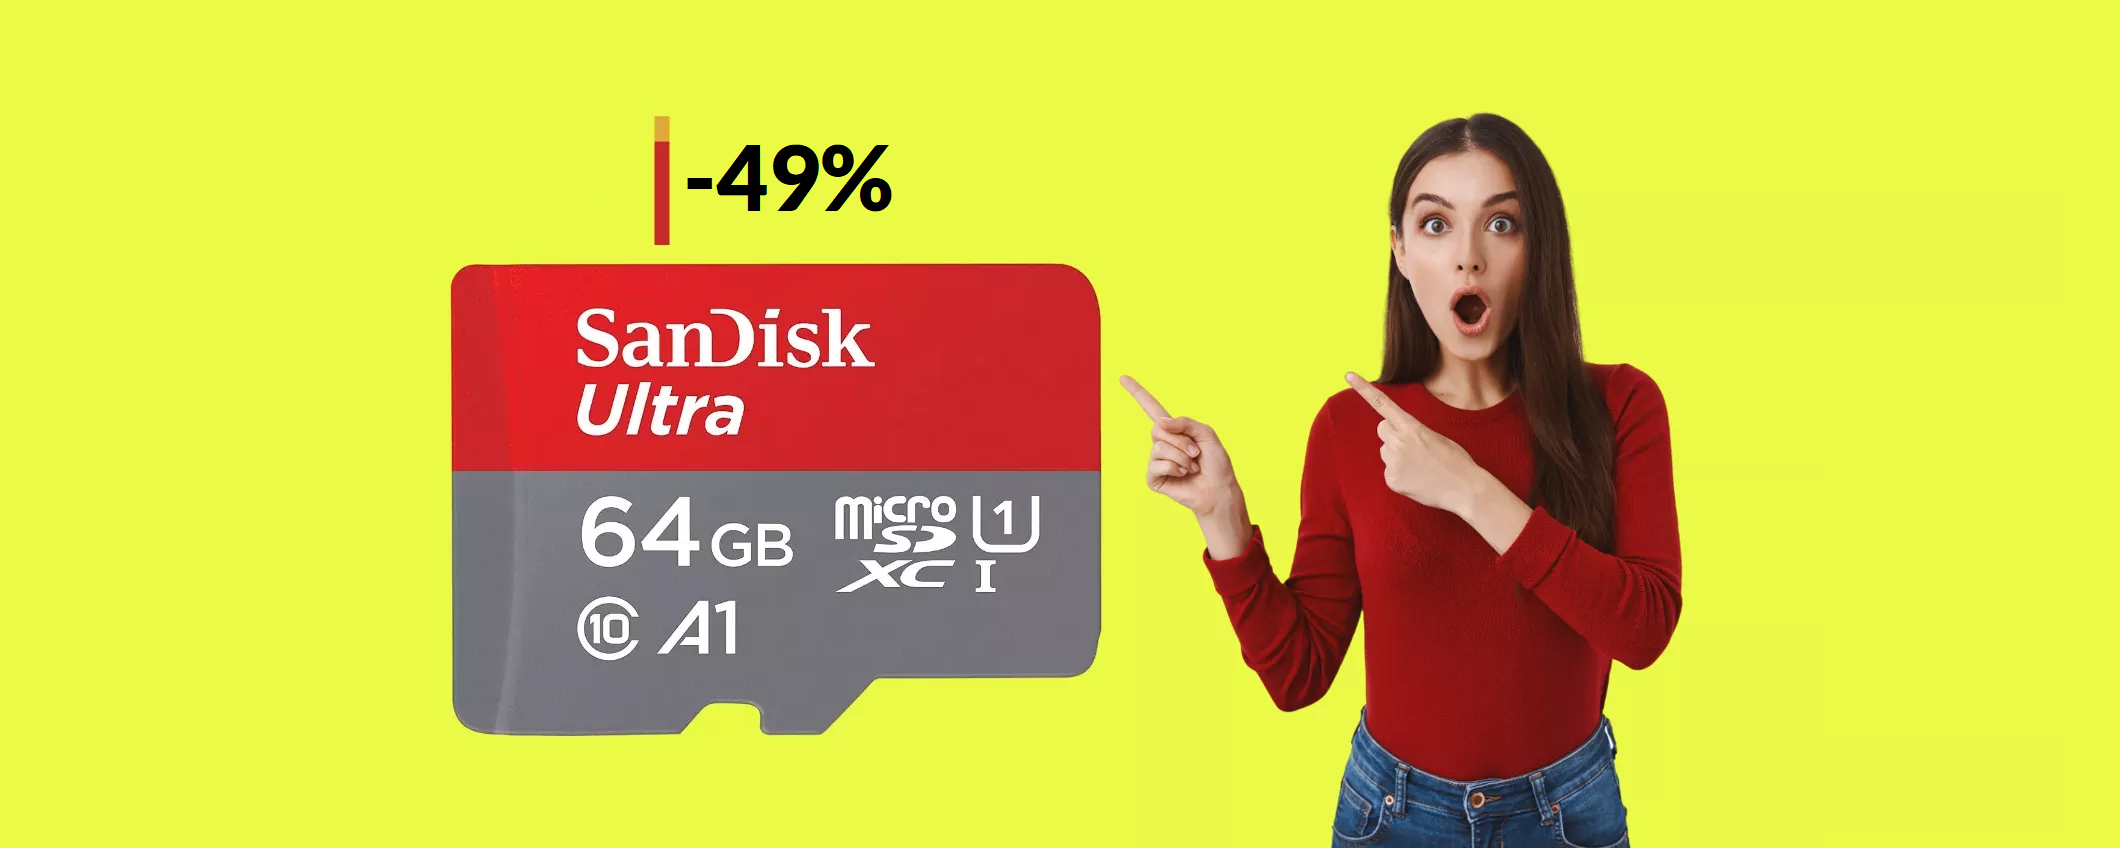 MicroSD SanDisk 64GB praticamente a METÀ prezzo: con 9€ è tua